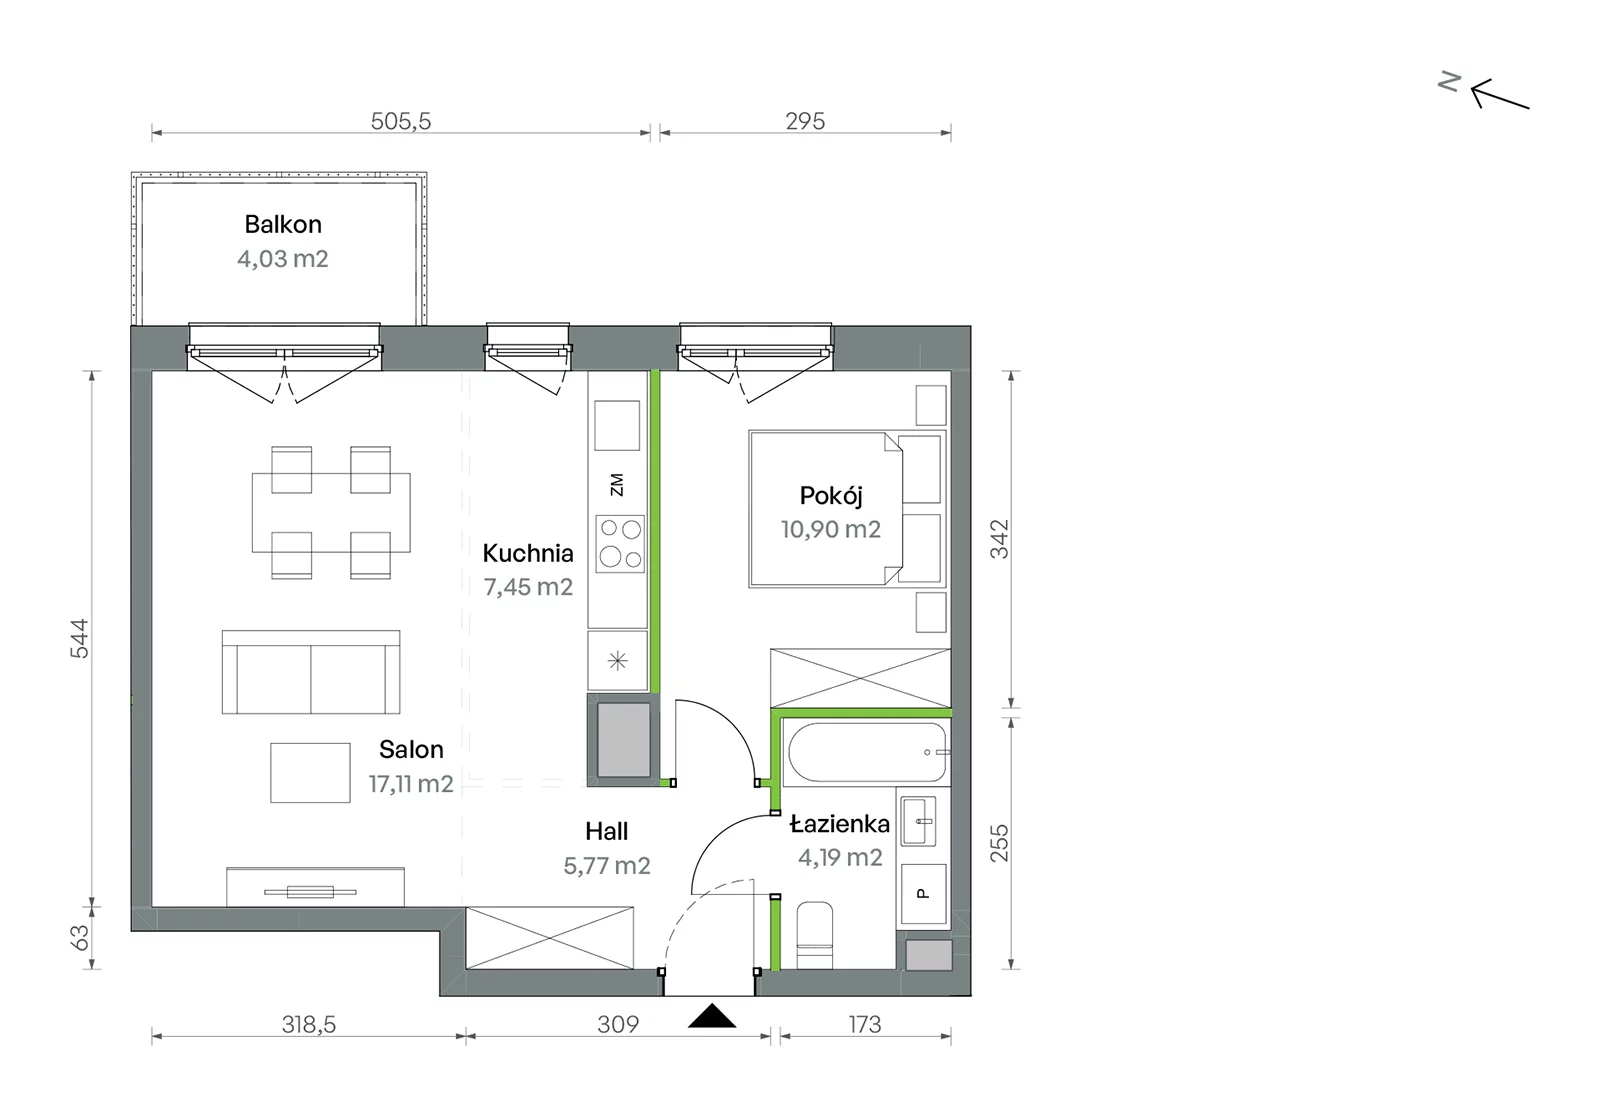 Mieszkanie 45,42 m², piętro 5, oferta nr 1/A/2/75, Oliwska Vita etap II, Warszawa, Targówek, Bródno, ul. Oliwska 11